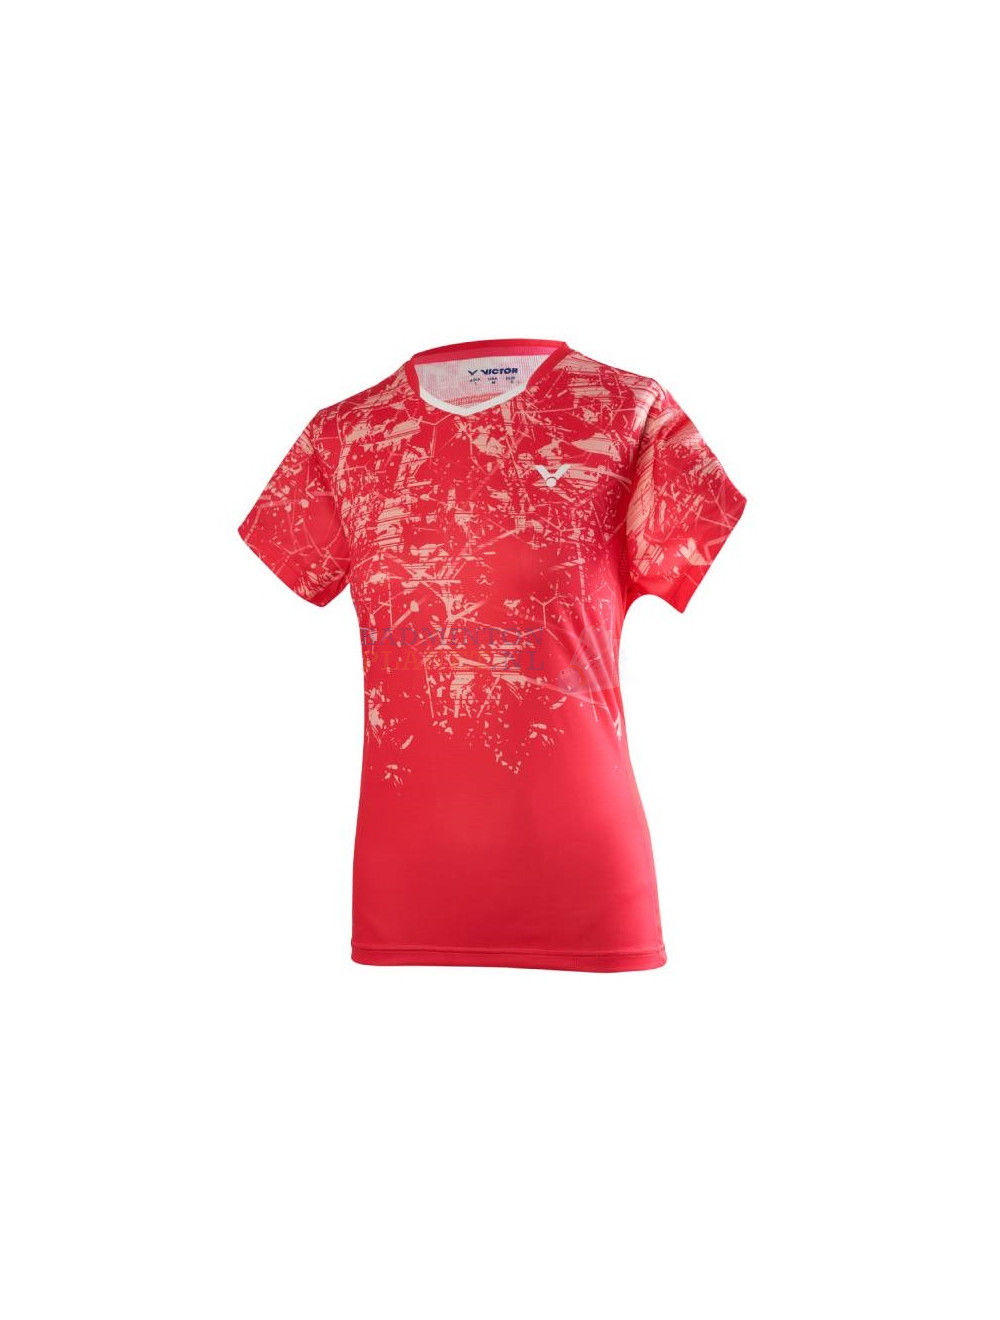 Bedenken Lijm Handvol Victor T-shirt T-01009 Roze kopen? - Badmintonplanet.nl